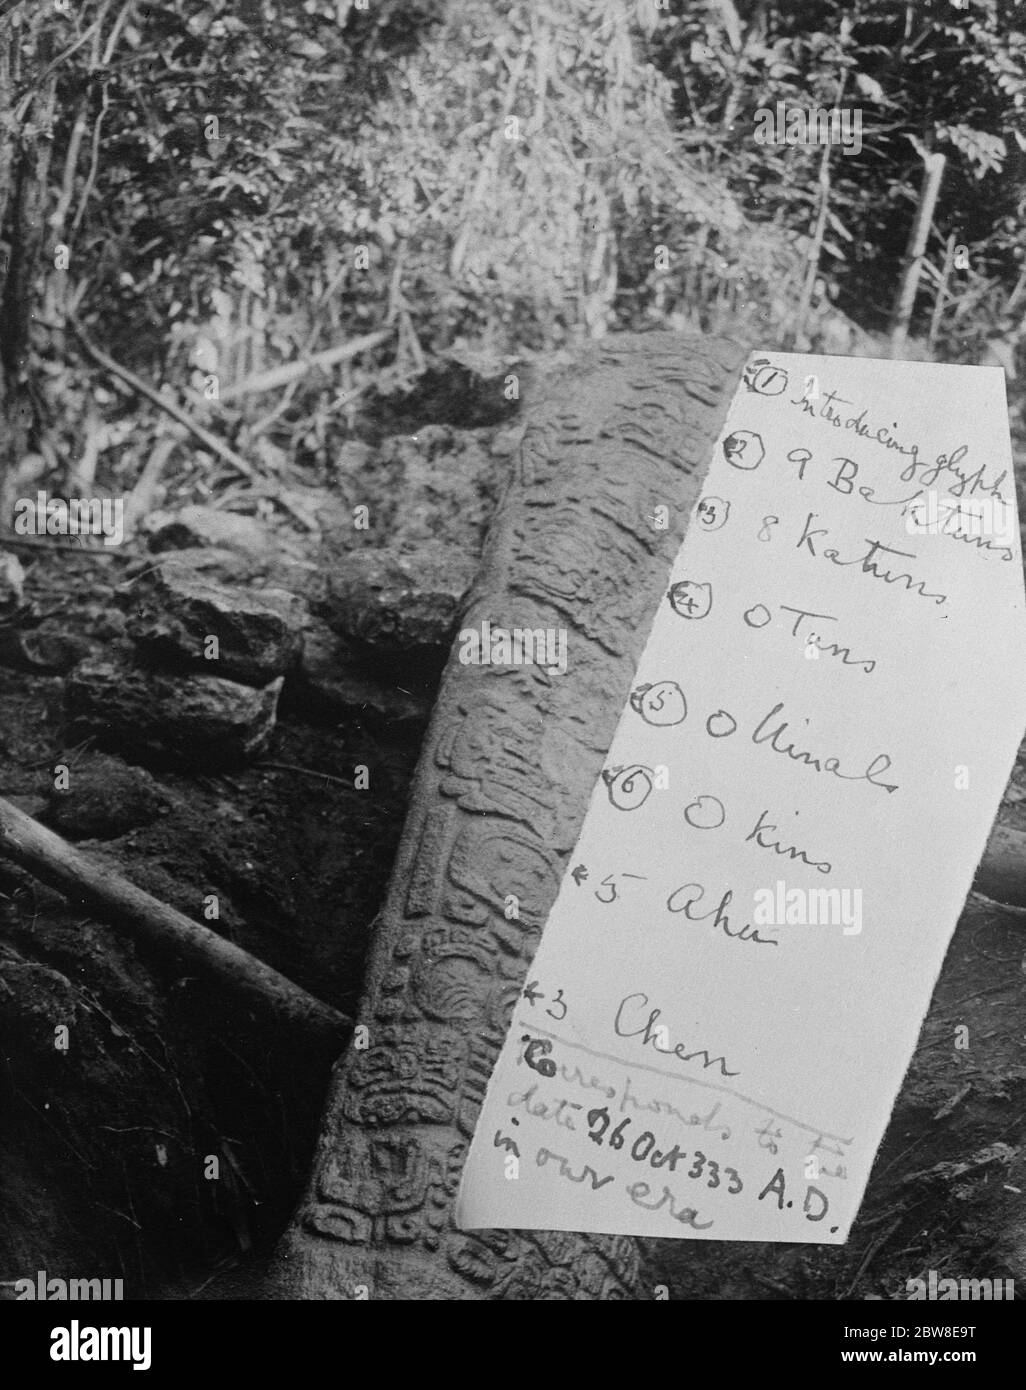 Berühmte Explorer 's markante Entdeckung . Datierte Tablette auf bisher unbekannte Maya-Site in Virgin Forests of Yucatan gefunden. Die datierte Maya Stela. 22 Februar 1926 Stockfoto